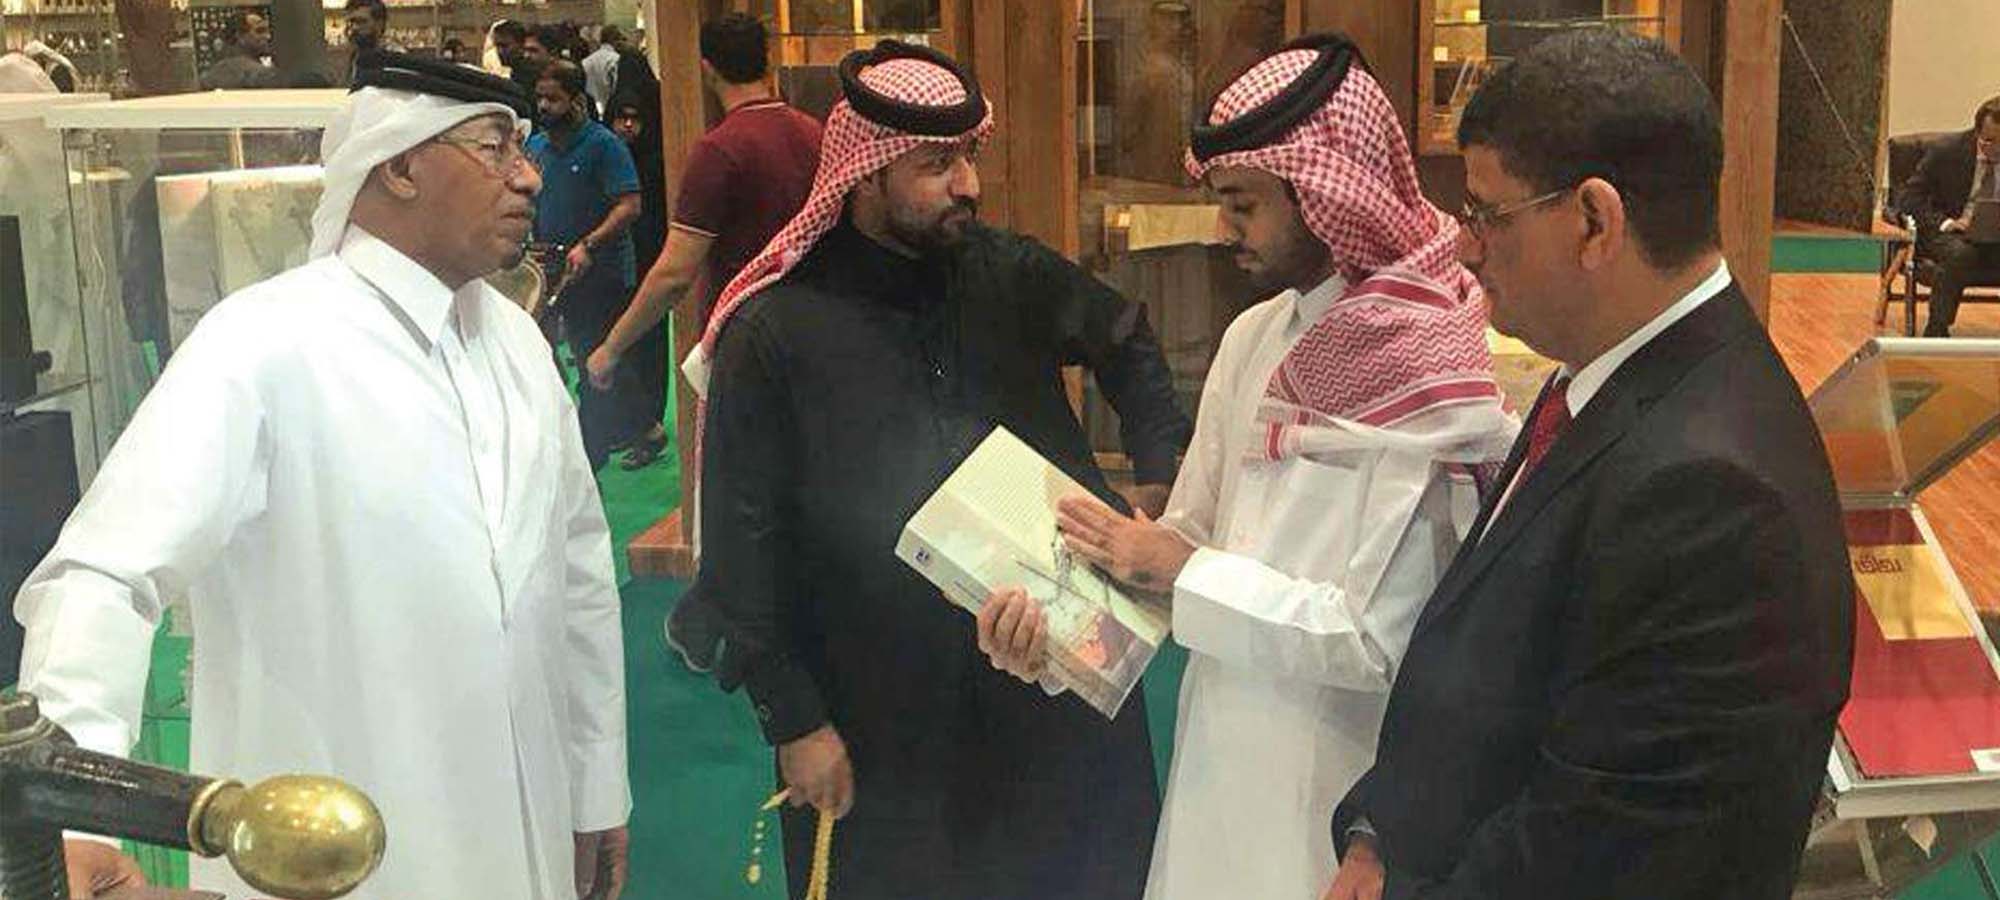 المركز يشارك في معرض الدوحة الدولي للكتاب الثامن والعشرين (نوفمبر 2017)